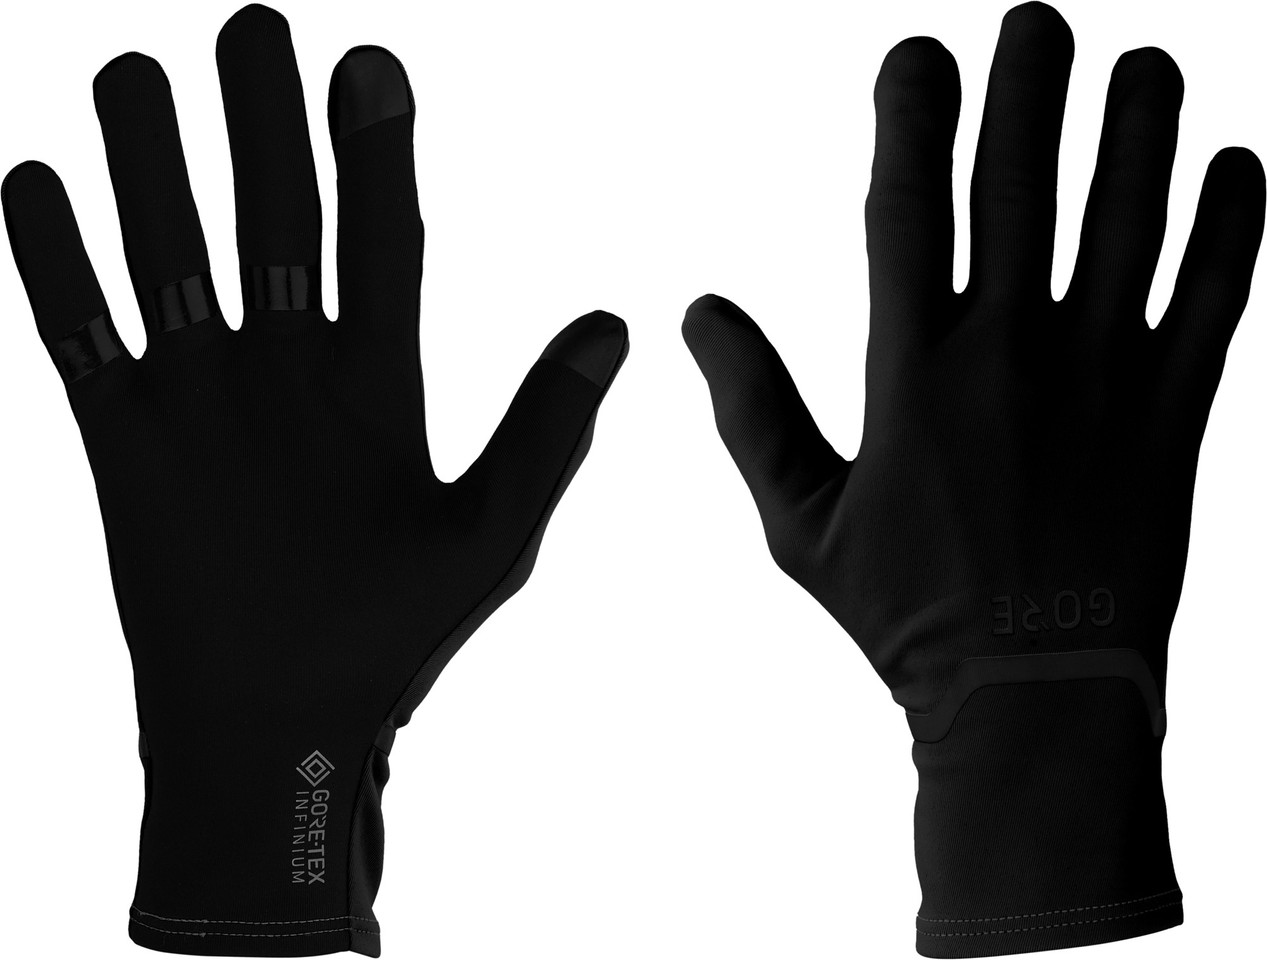 GORE Wear Guantes de dedos completos M GORE-TEX INFINIUM Stretch -  bike-components